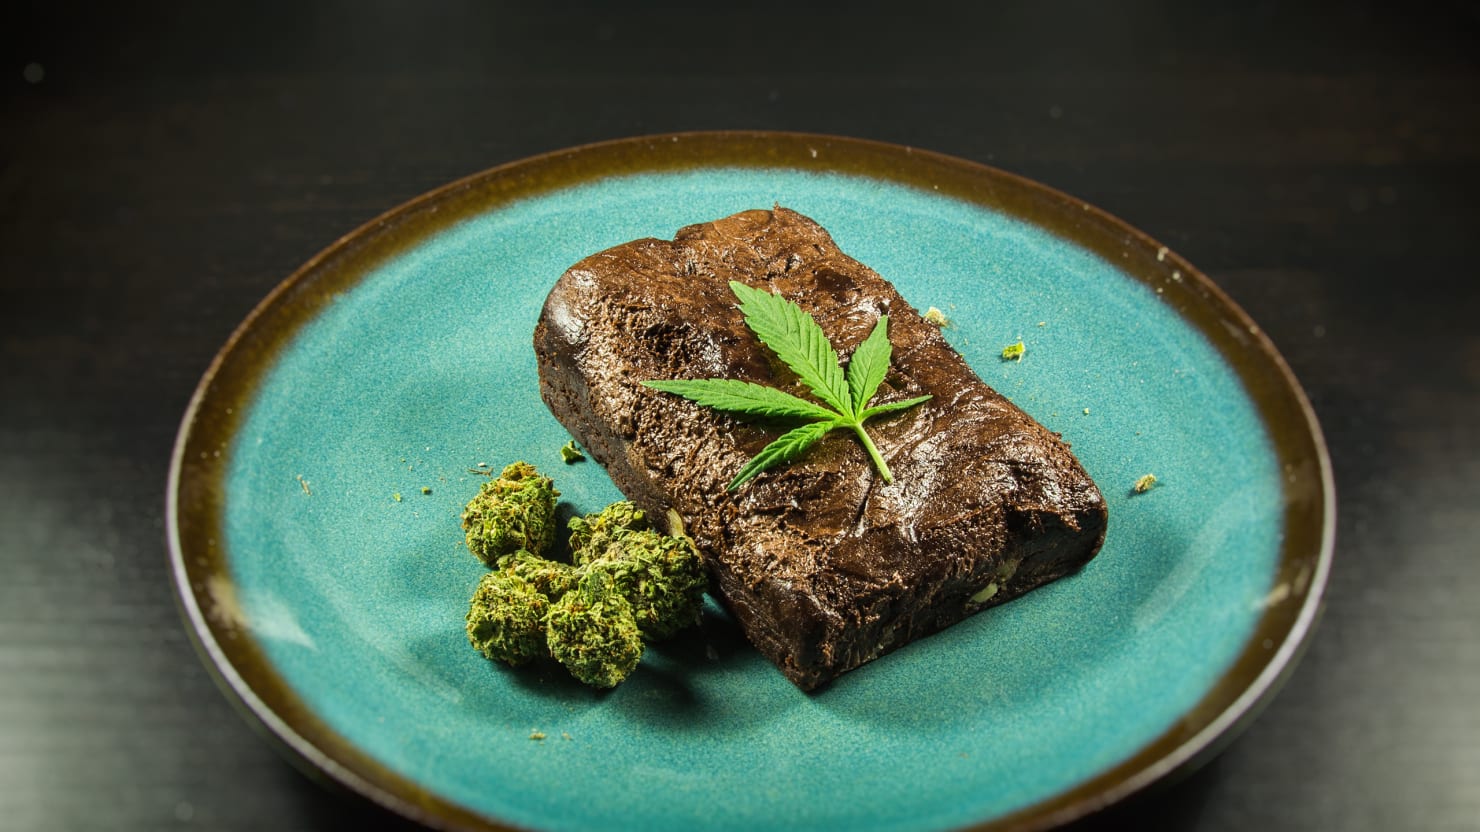 Блюда марихуана самые красивые фото конопли